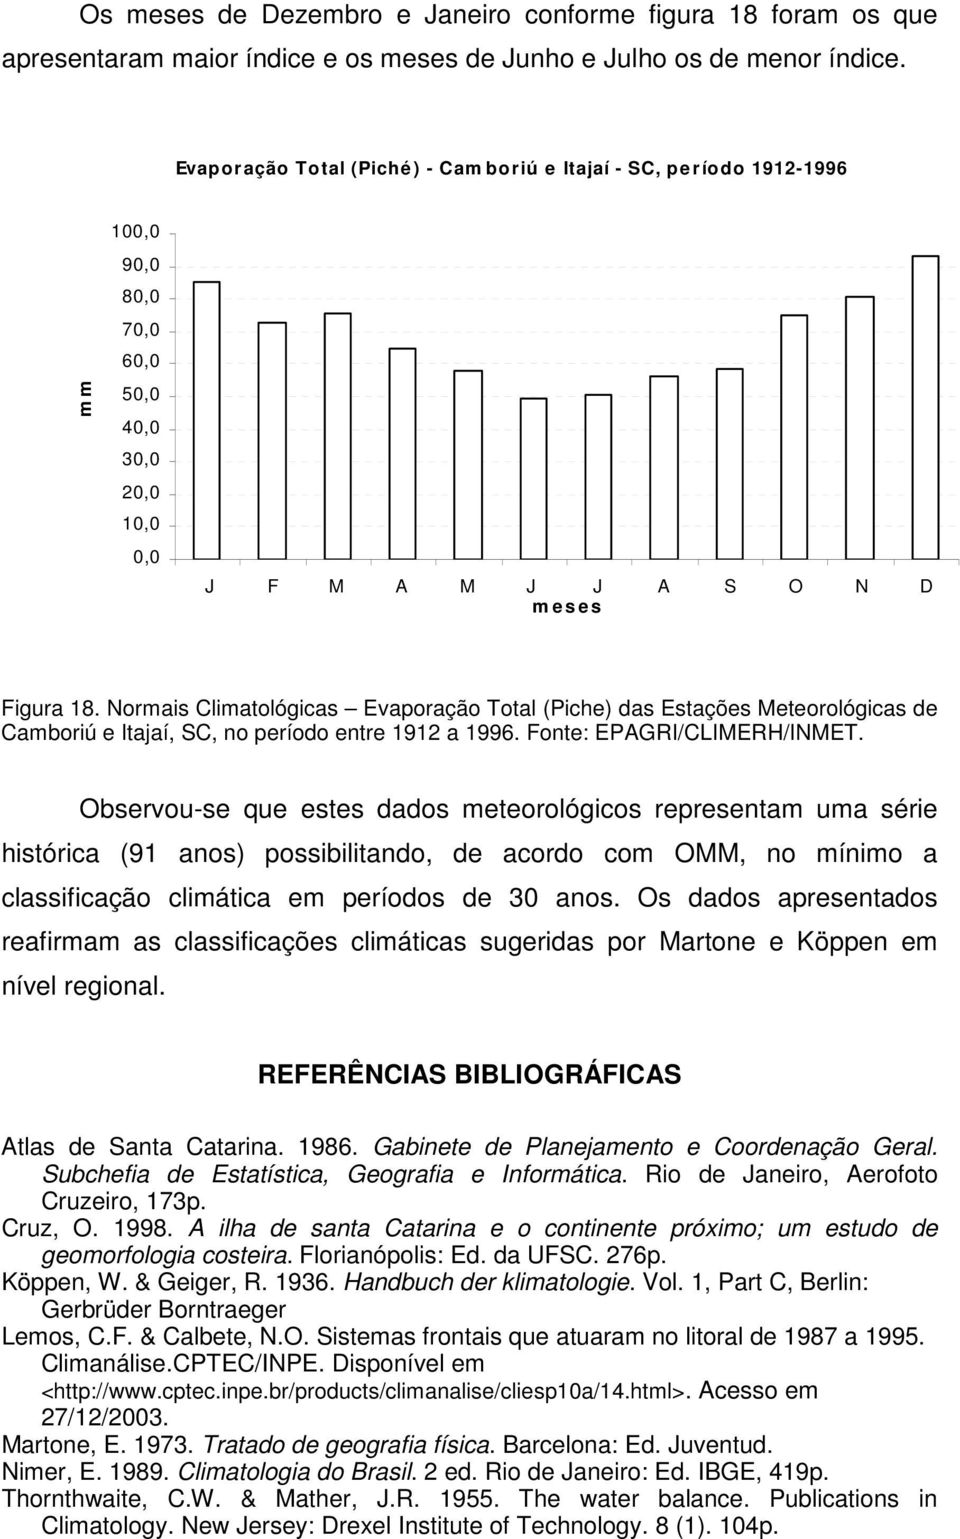 Normais Climatológicas Evaporação Total (Piche) das Estações Meteorológicas de Camboriú e Itajaí, SC, no período entre 1912 a 1996. Fonte: EPAGRI/CLIMERH/INMET.